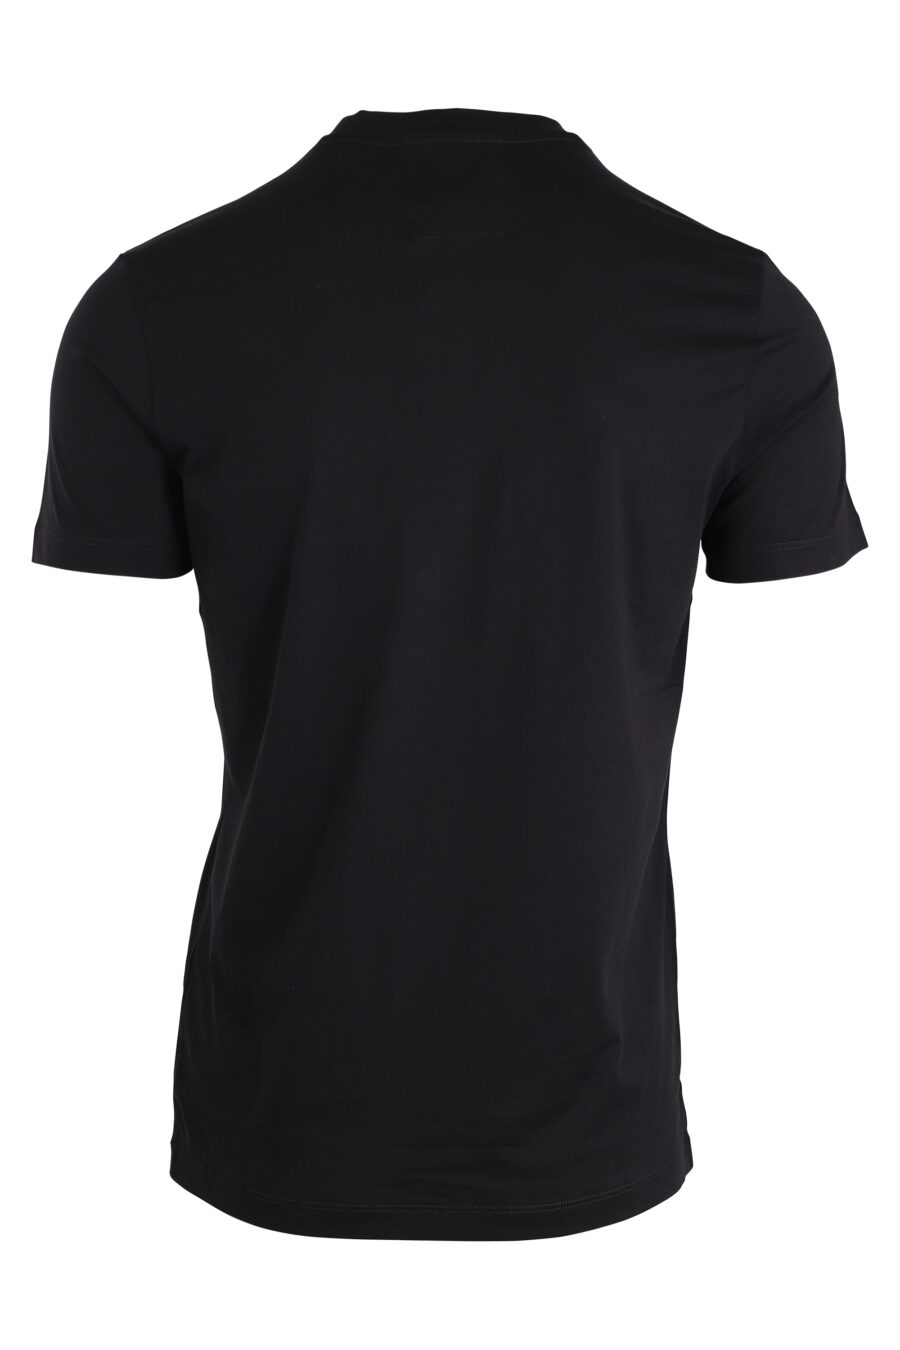 T-Shirt schwarz mit weißem Schriftzug maxilogo - IMG 4251